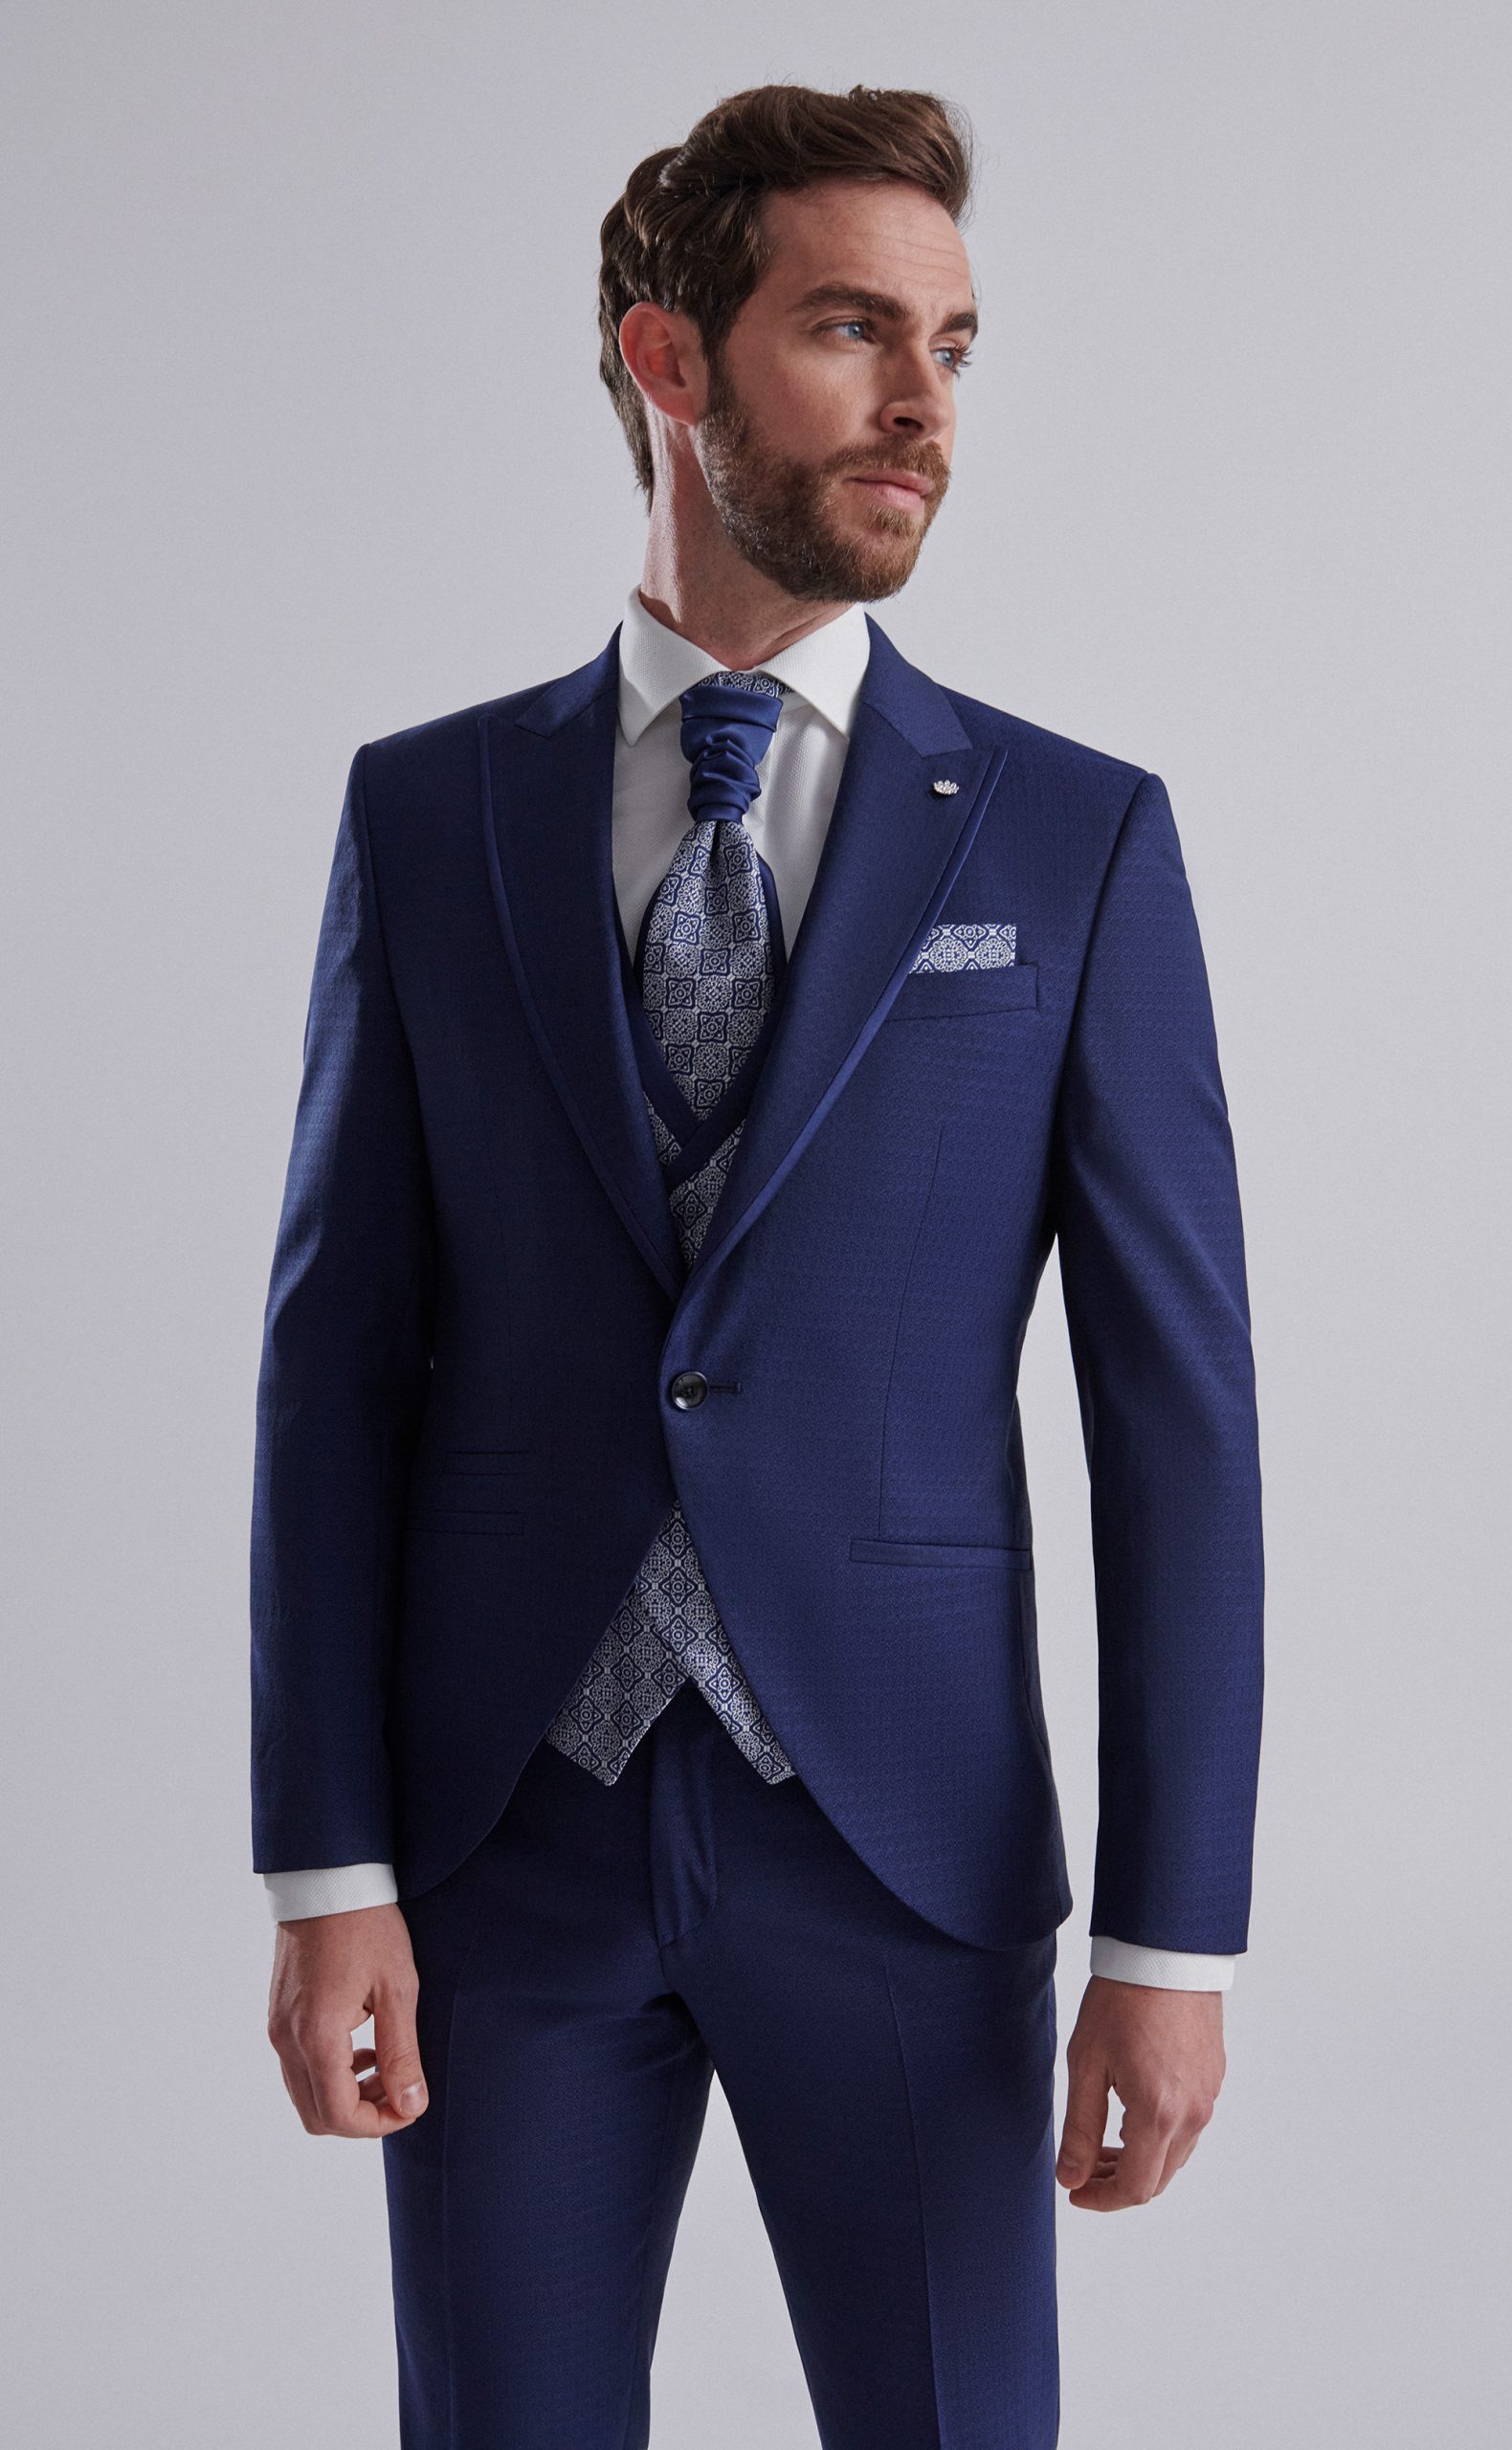 Traje de novio con tejido labrado y vivos en raso en color azul marino con chaleco cruzado y falsa solapa de la Colección Trend.